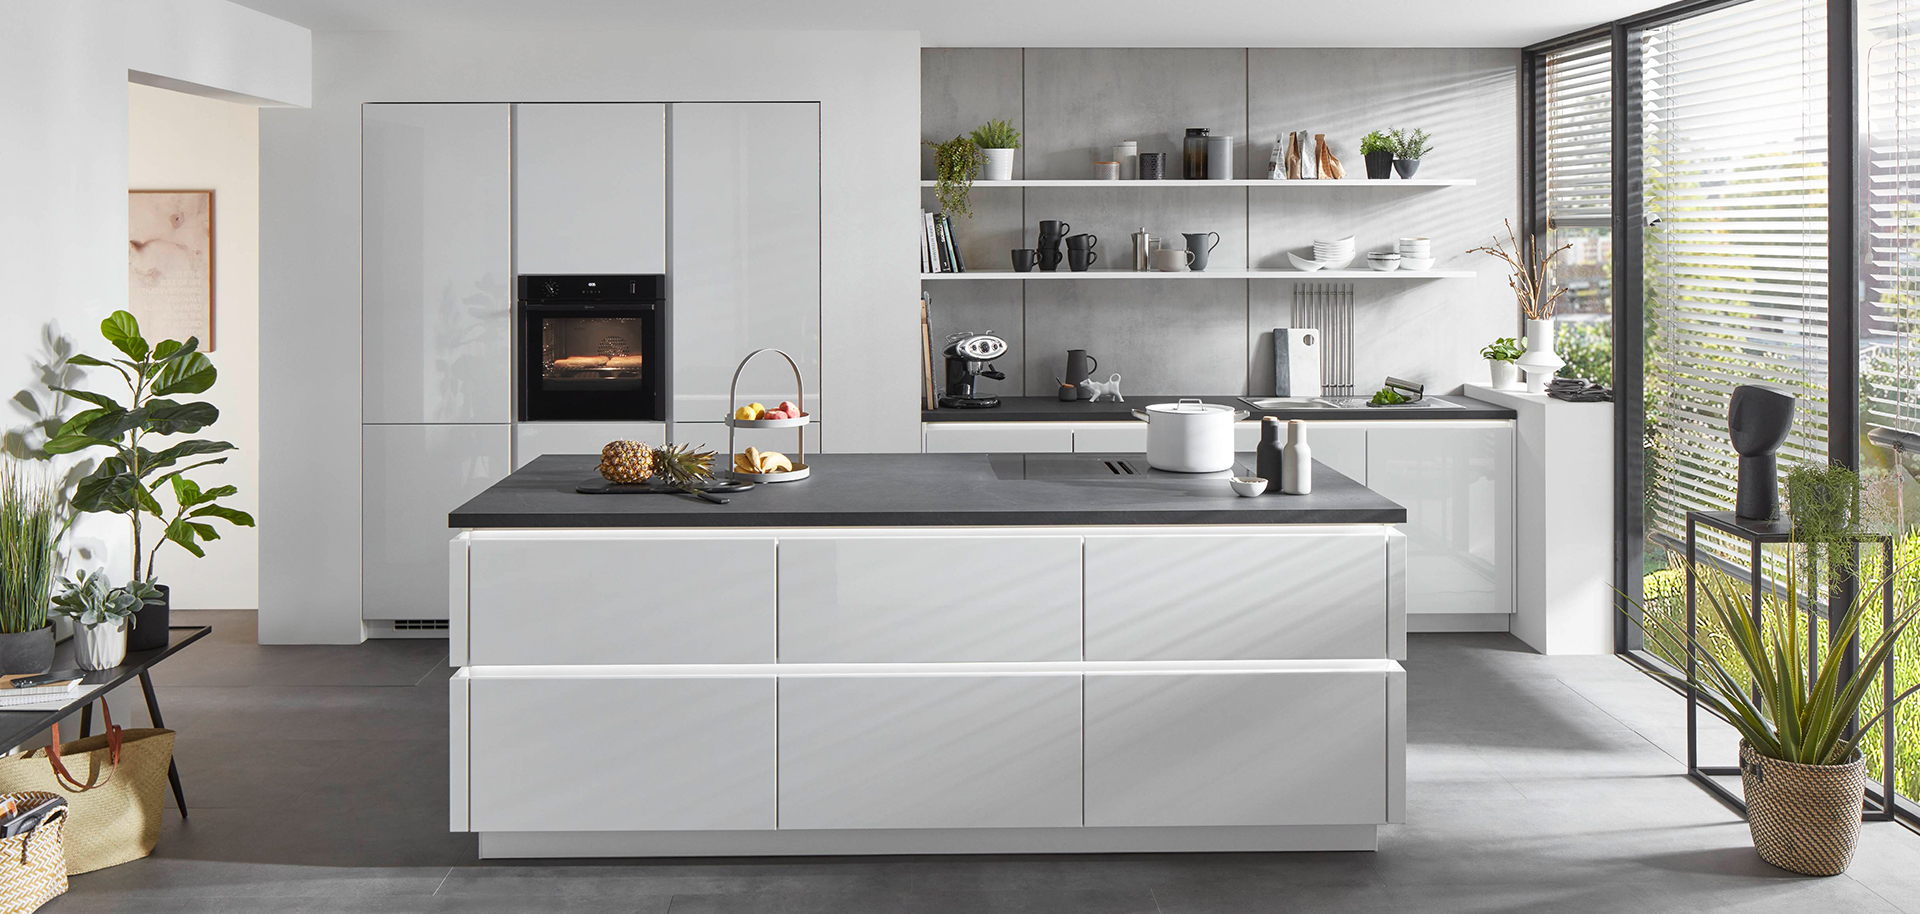 Cocina moderna con gabinetes blancos, electrodomésticos integrados y una isla central con una encimera oscura, complementada por luz natural y decoración minimalista.